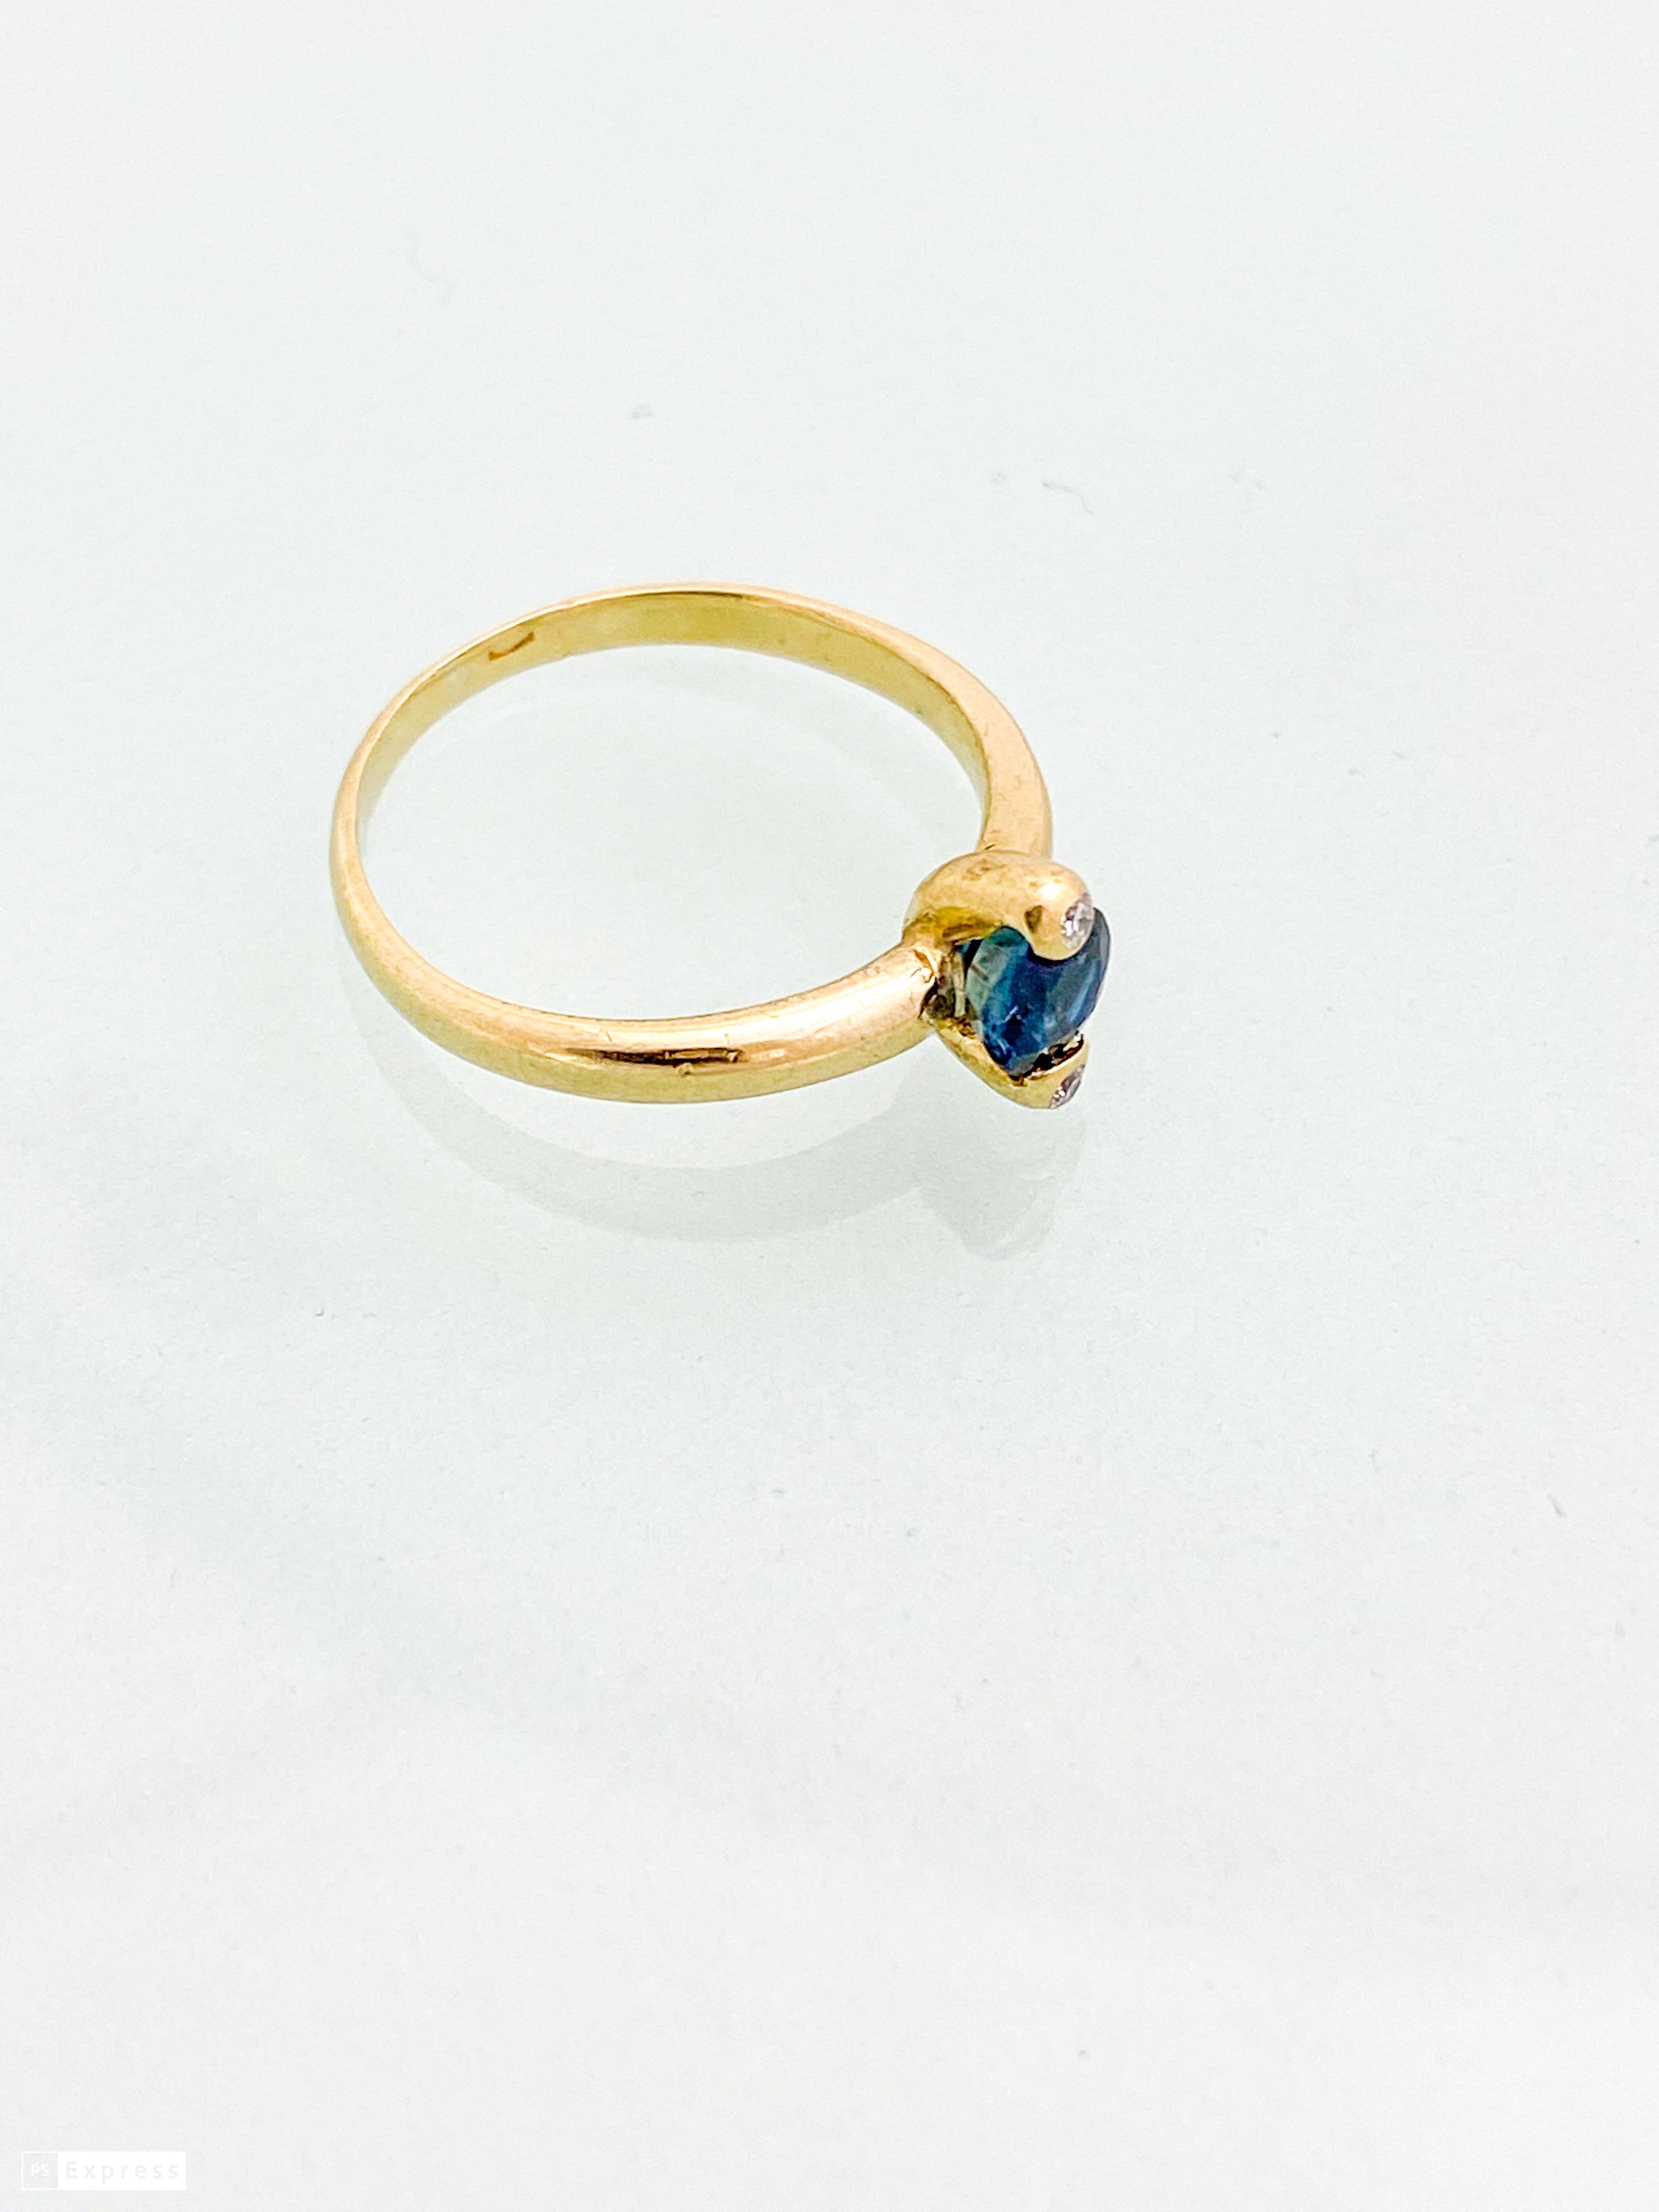 טבעת זהב צהוב 14 קארט עם אבן חן מרכזית כחולה ובצדדים יהלומים